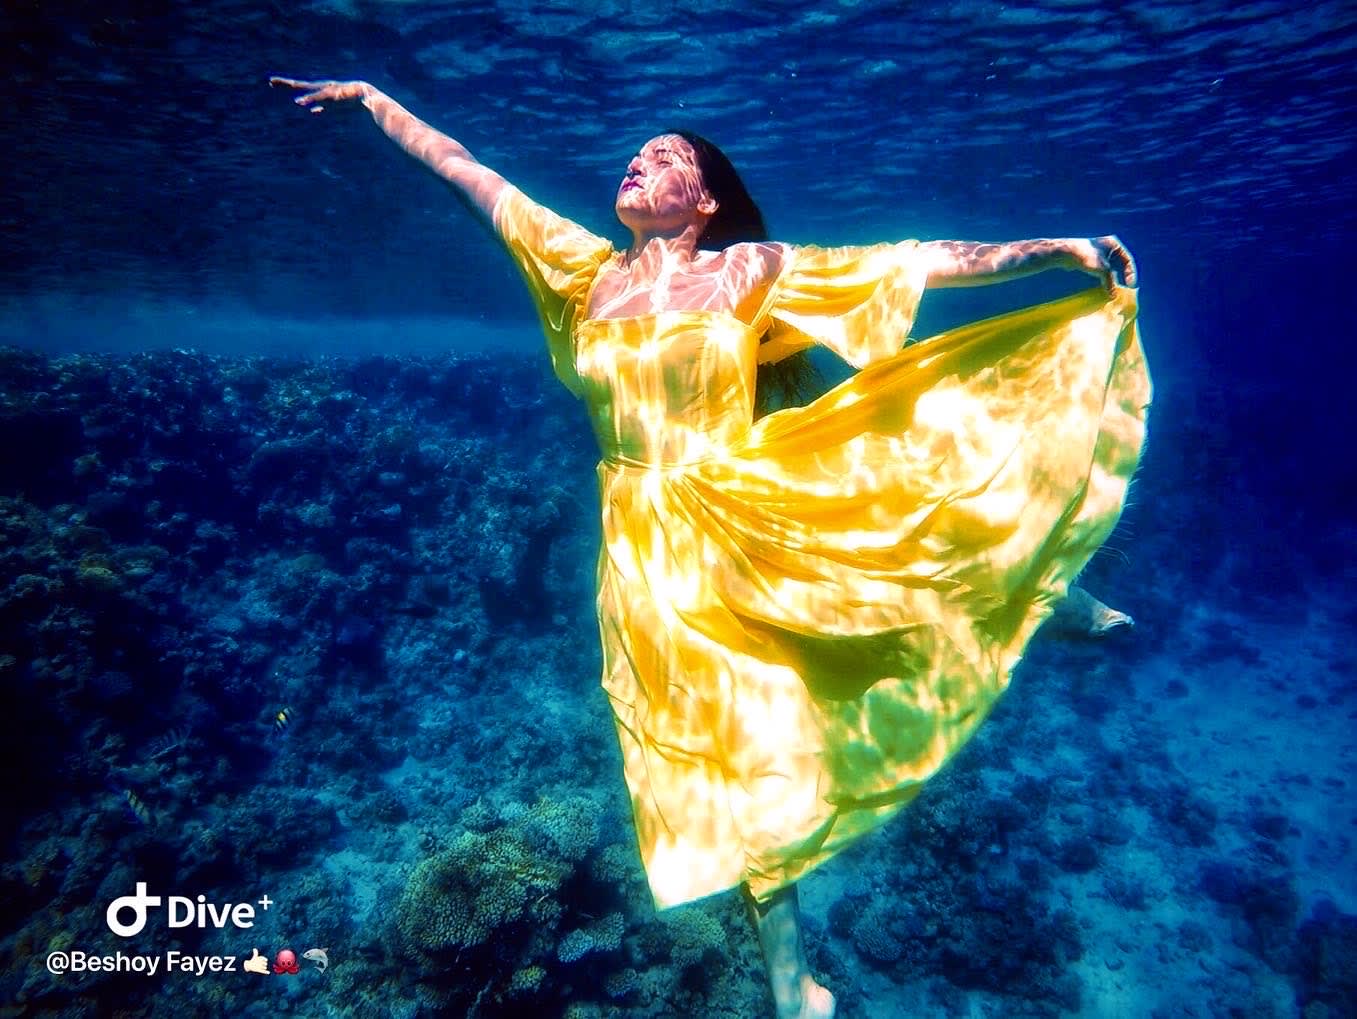 بأعماق البحر الأحمر..أول عرض أزياء تحت الماء في مصر يثير الذهول